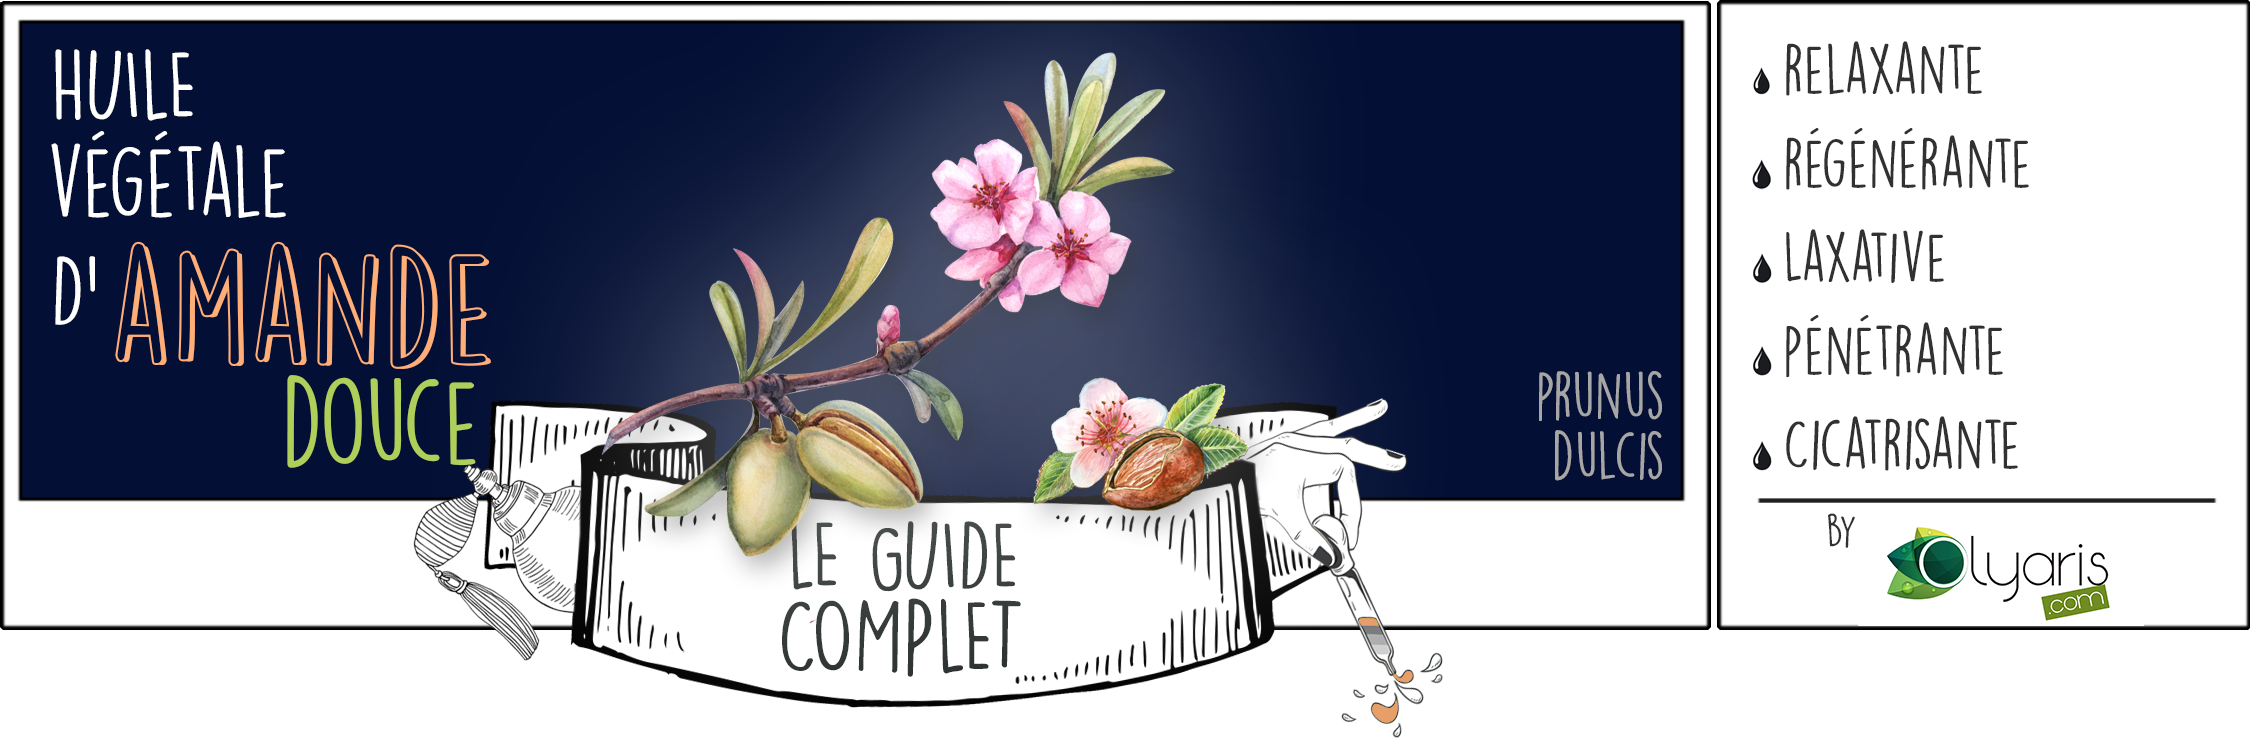 Huile Végétale de d'Amande Douce : le Guide d'Utilisation Complet - Olyaris